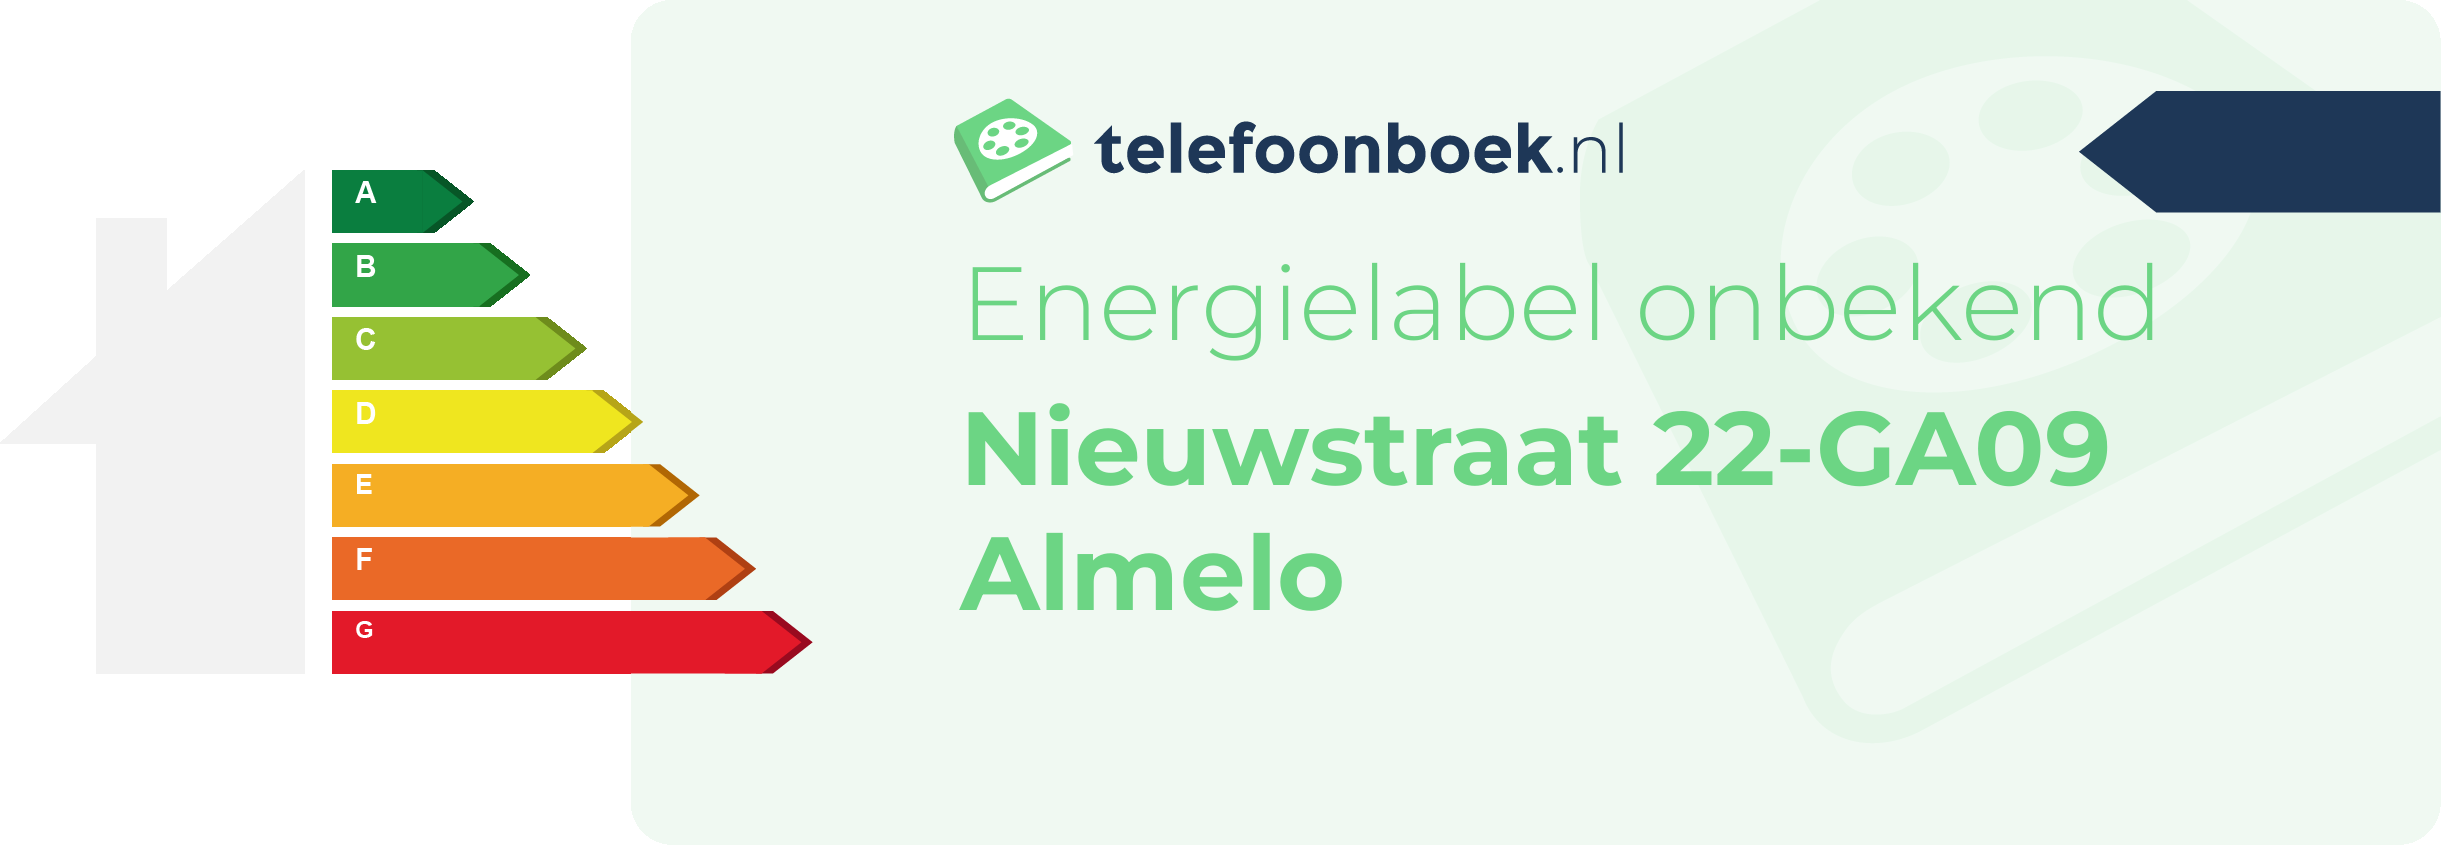 Energielabel Nieuwstraat 22-GA09 Almelo